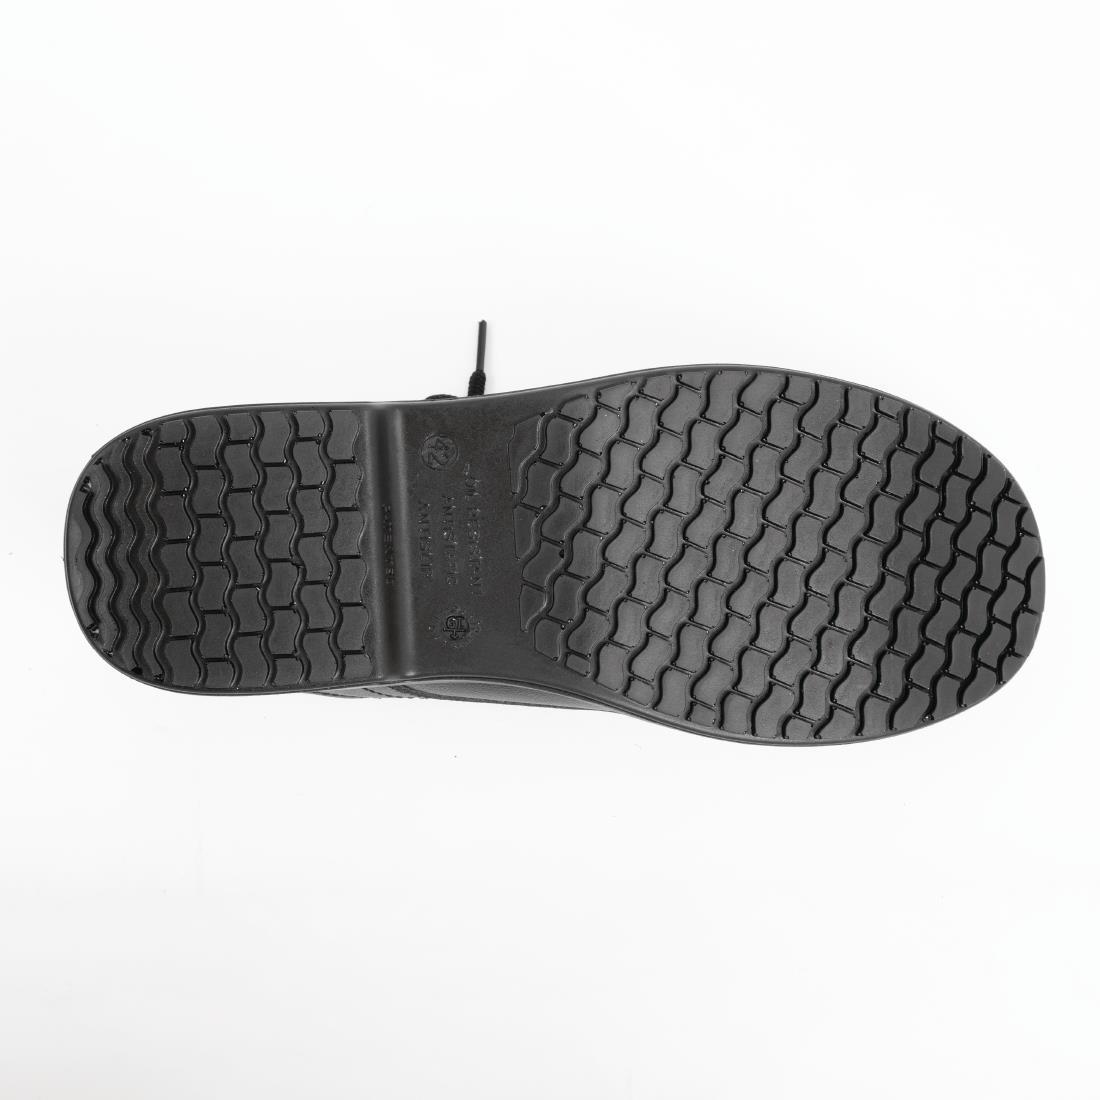 Slipbuster Basic Toe Cap Safety Shoes Black 47 - BB497-47  - 2